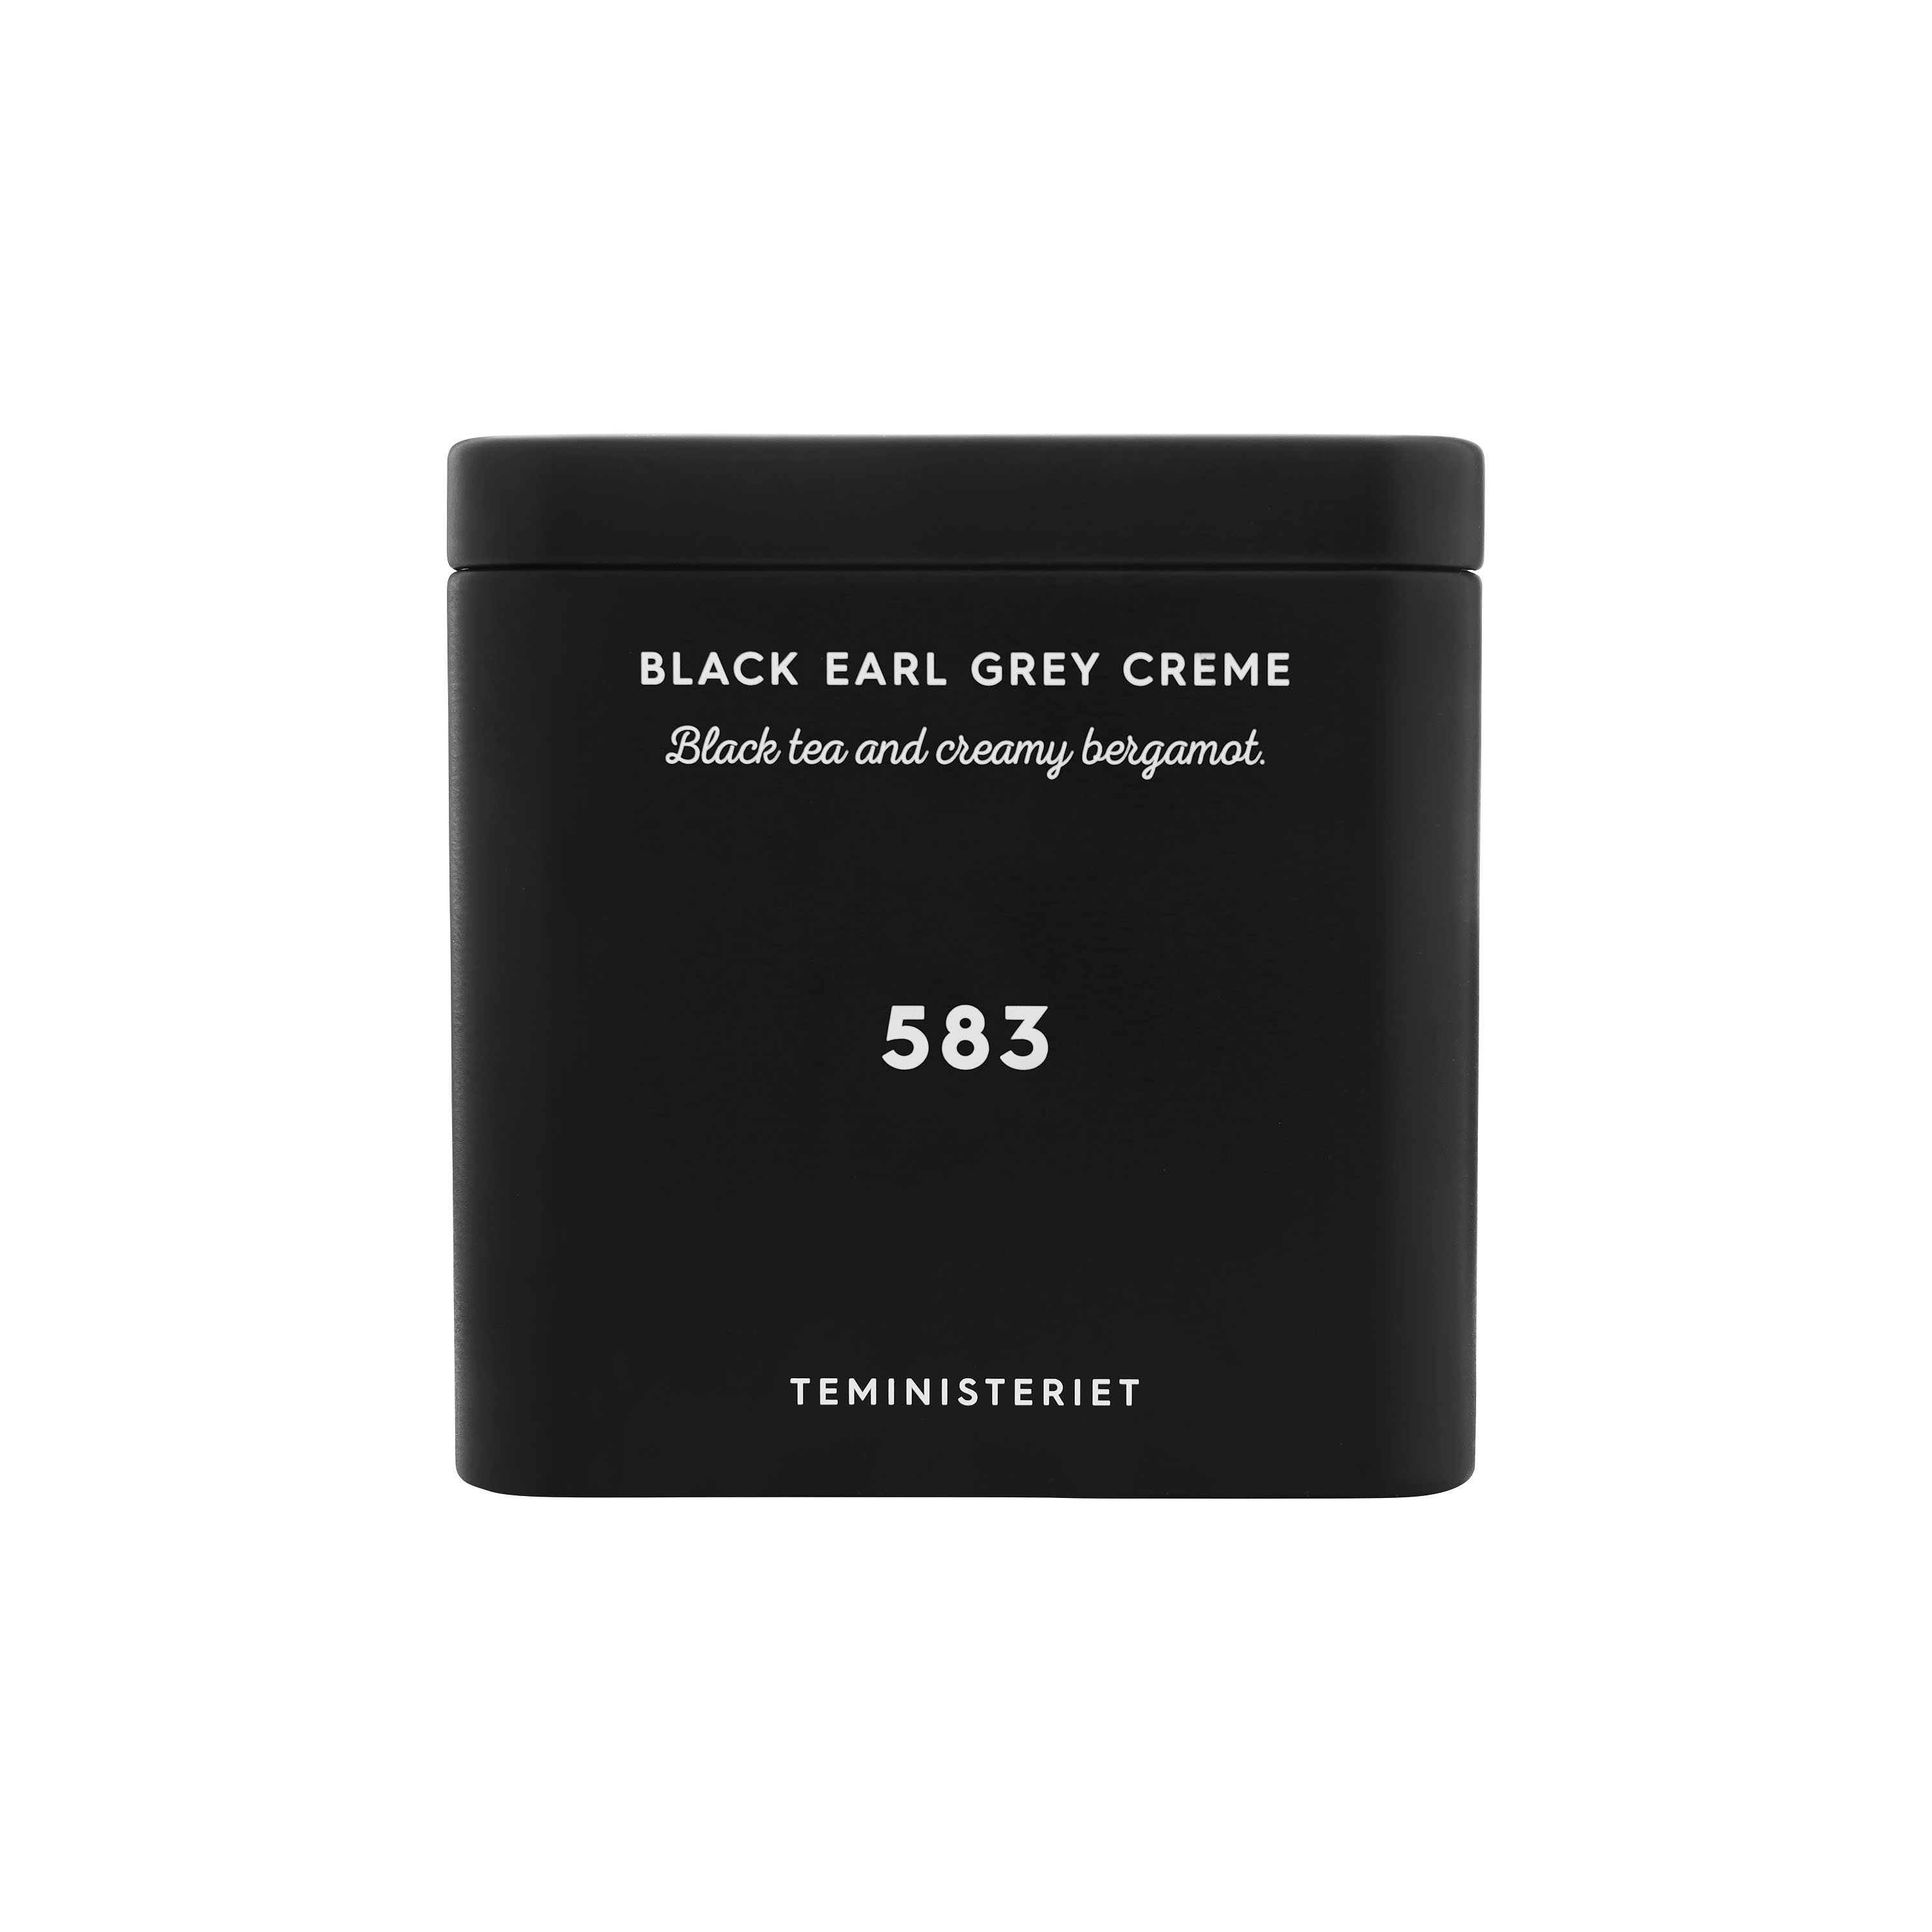 Tea - 583 black earl grey creme i lösvikt, svart metallbox